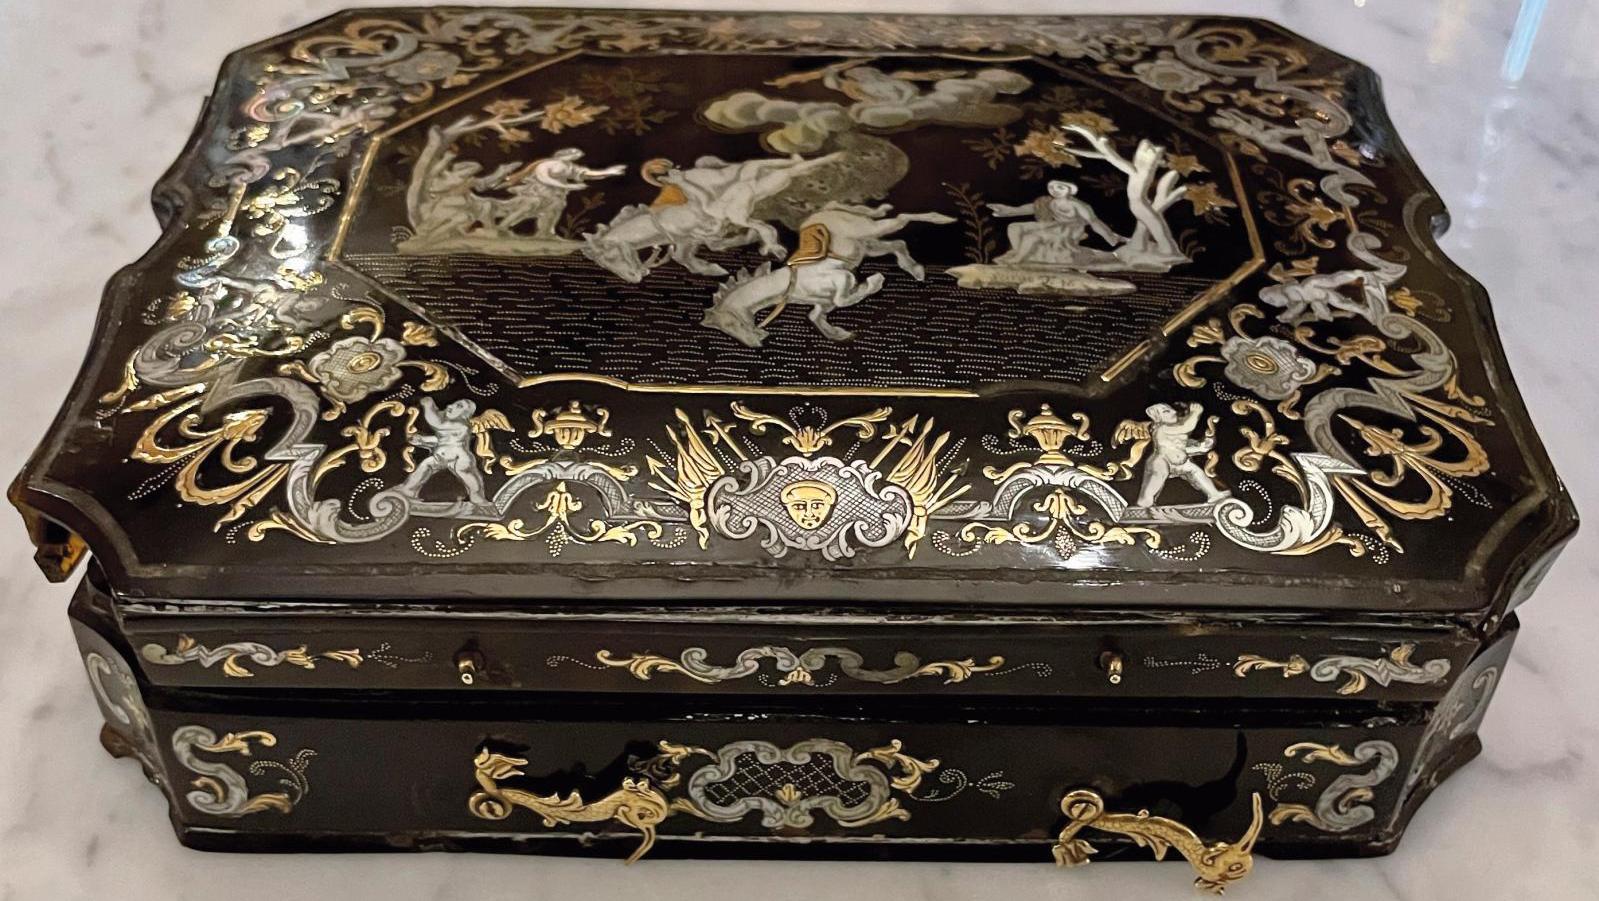 Naples, atelier des Sarao, milieu du XVIIIe siècle, coffret en écaille piquée d’or... Un coffret napolitain complètement piqué !